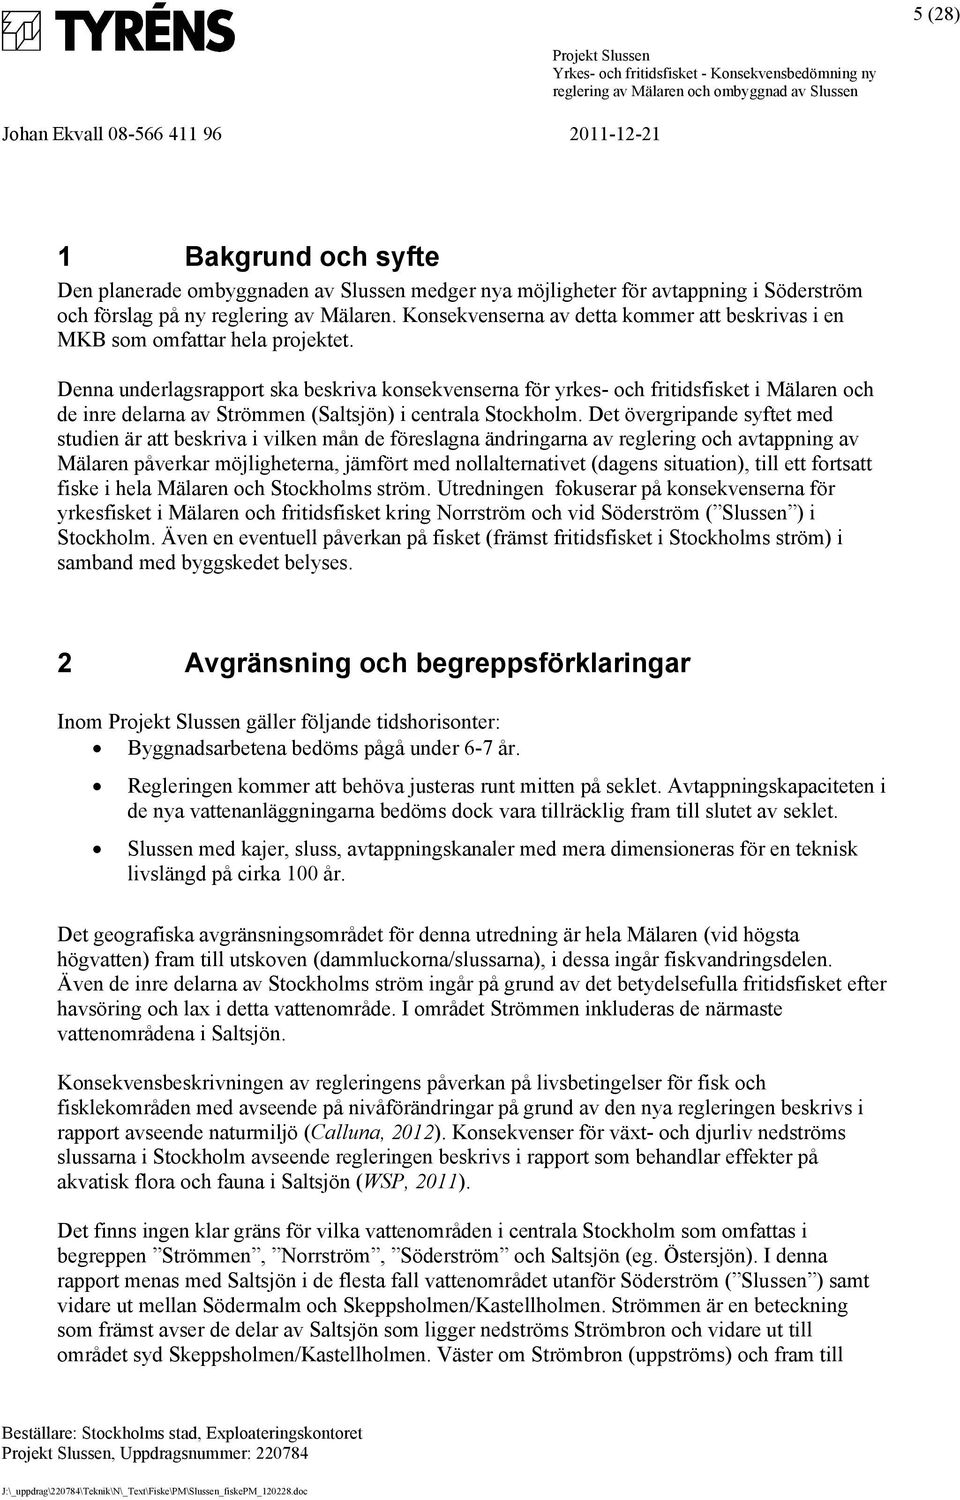 Denna underlagsrapport ska beskriva konsekvenserna för yrkes- och fritidsfisket i Mälaren och de inre delarna av Strömmen (Saltsjön) i centrala Stockholm.